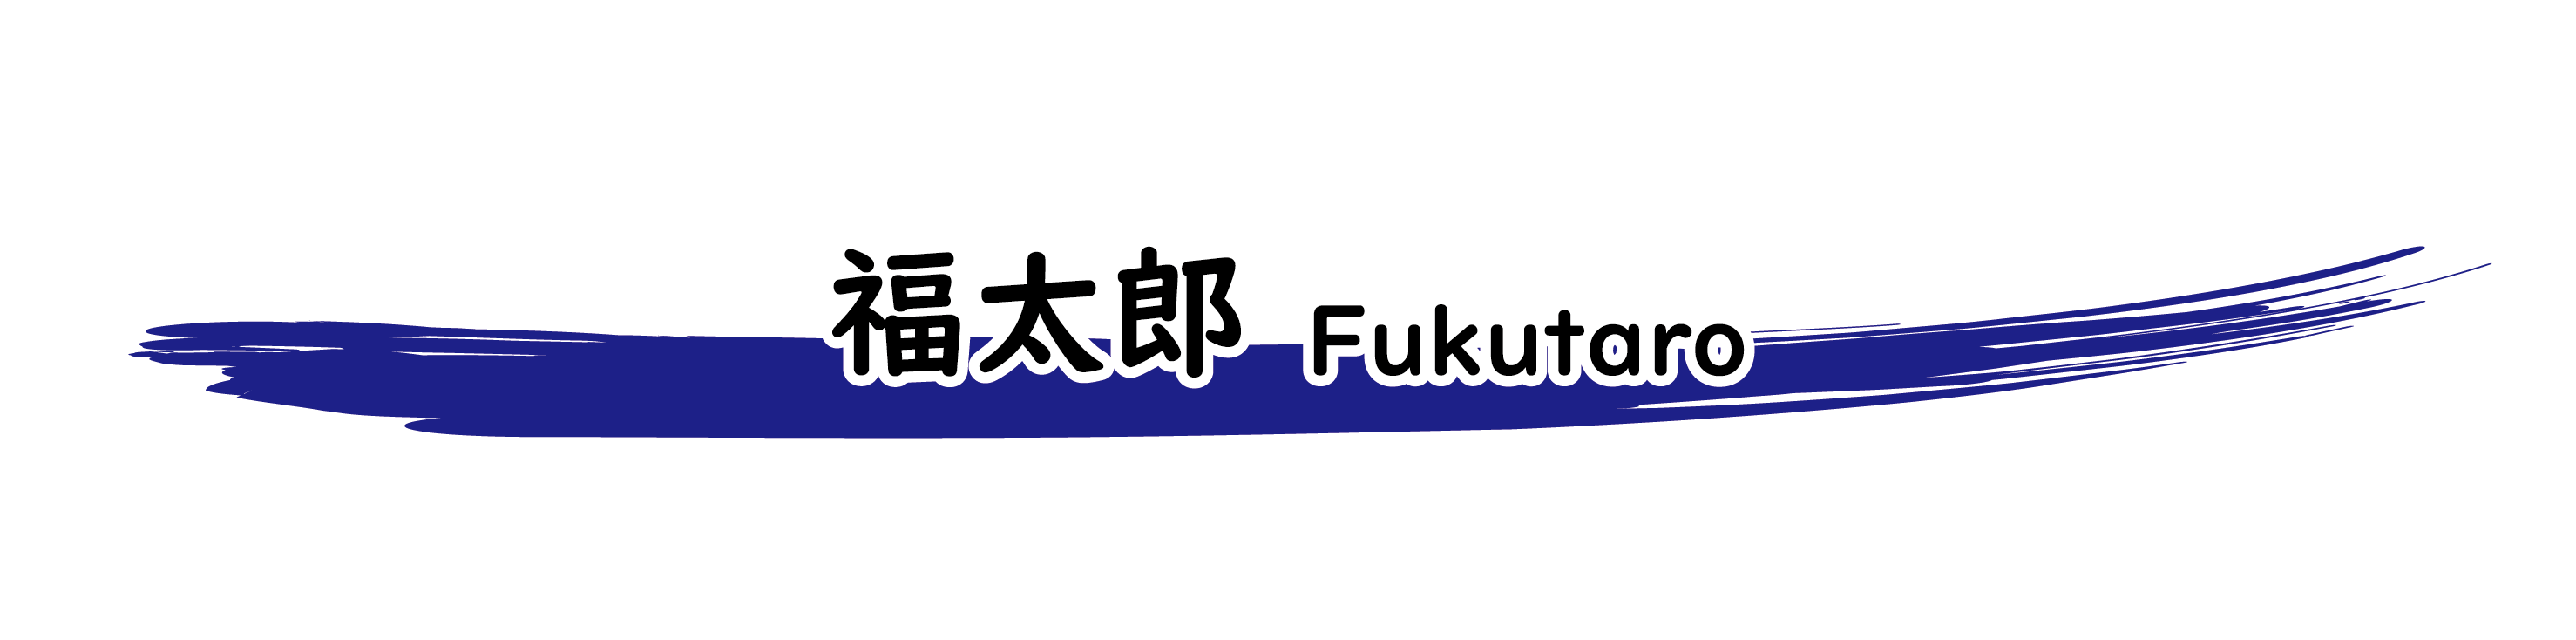 福太郎餅 Fukutaro Mochi